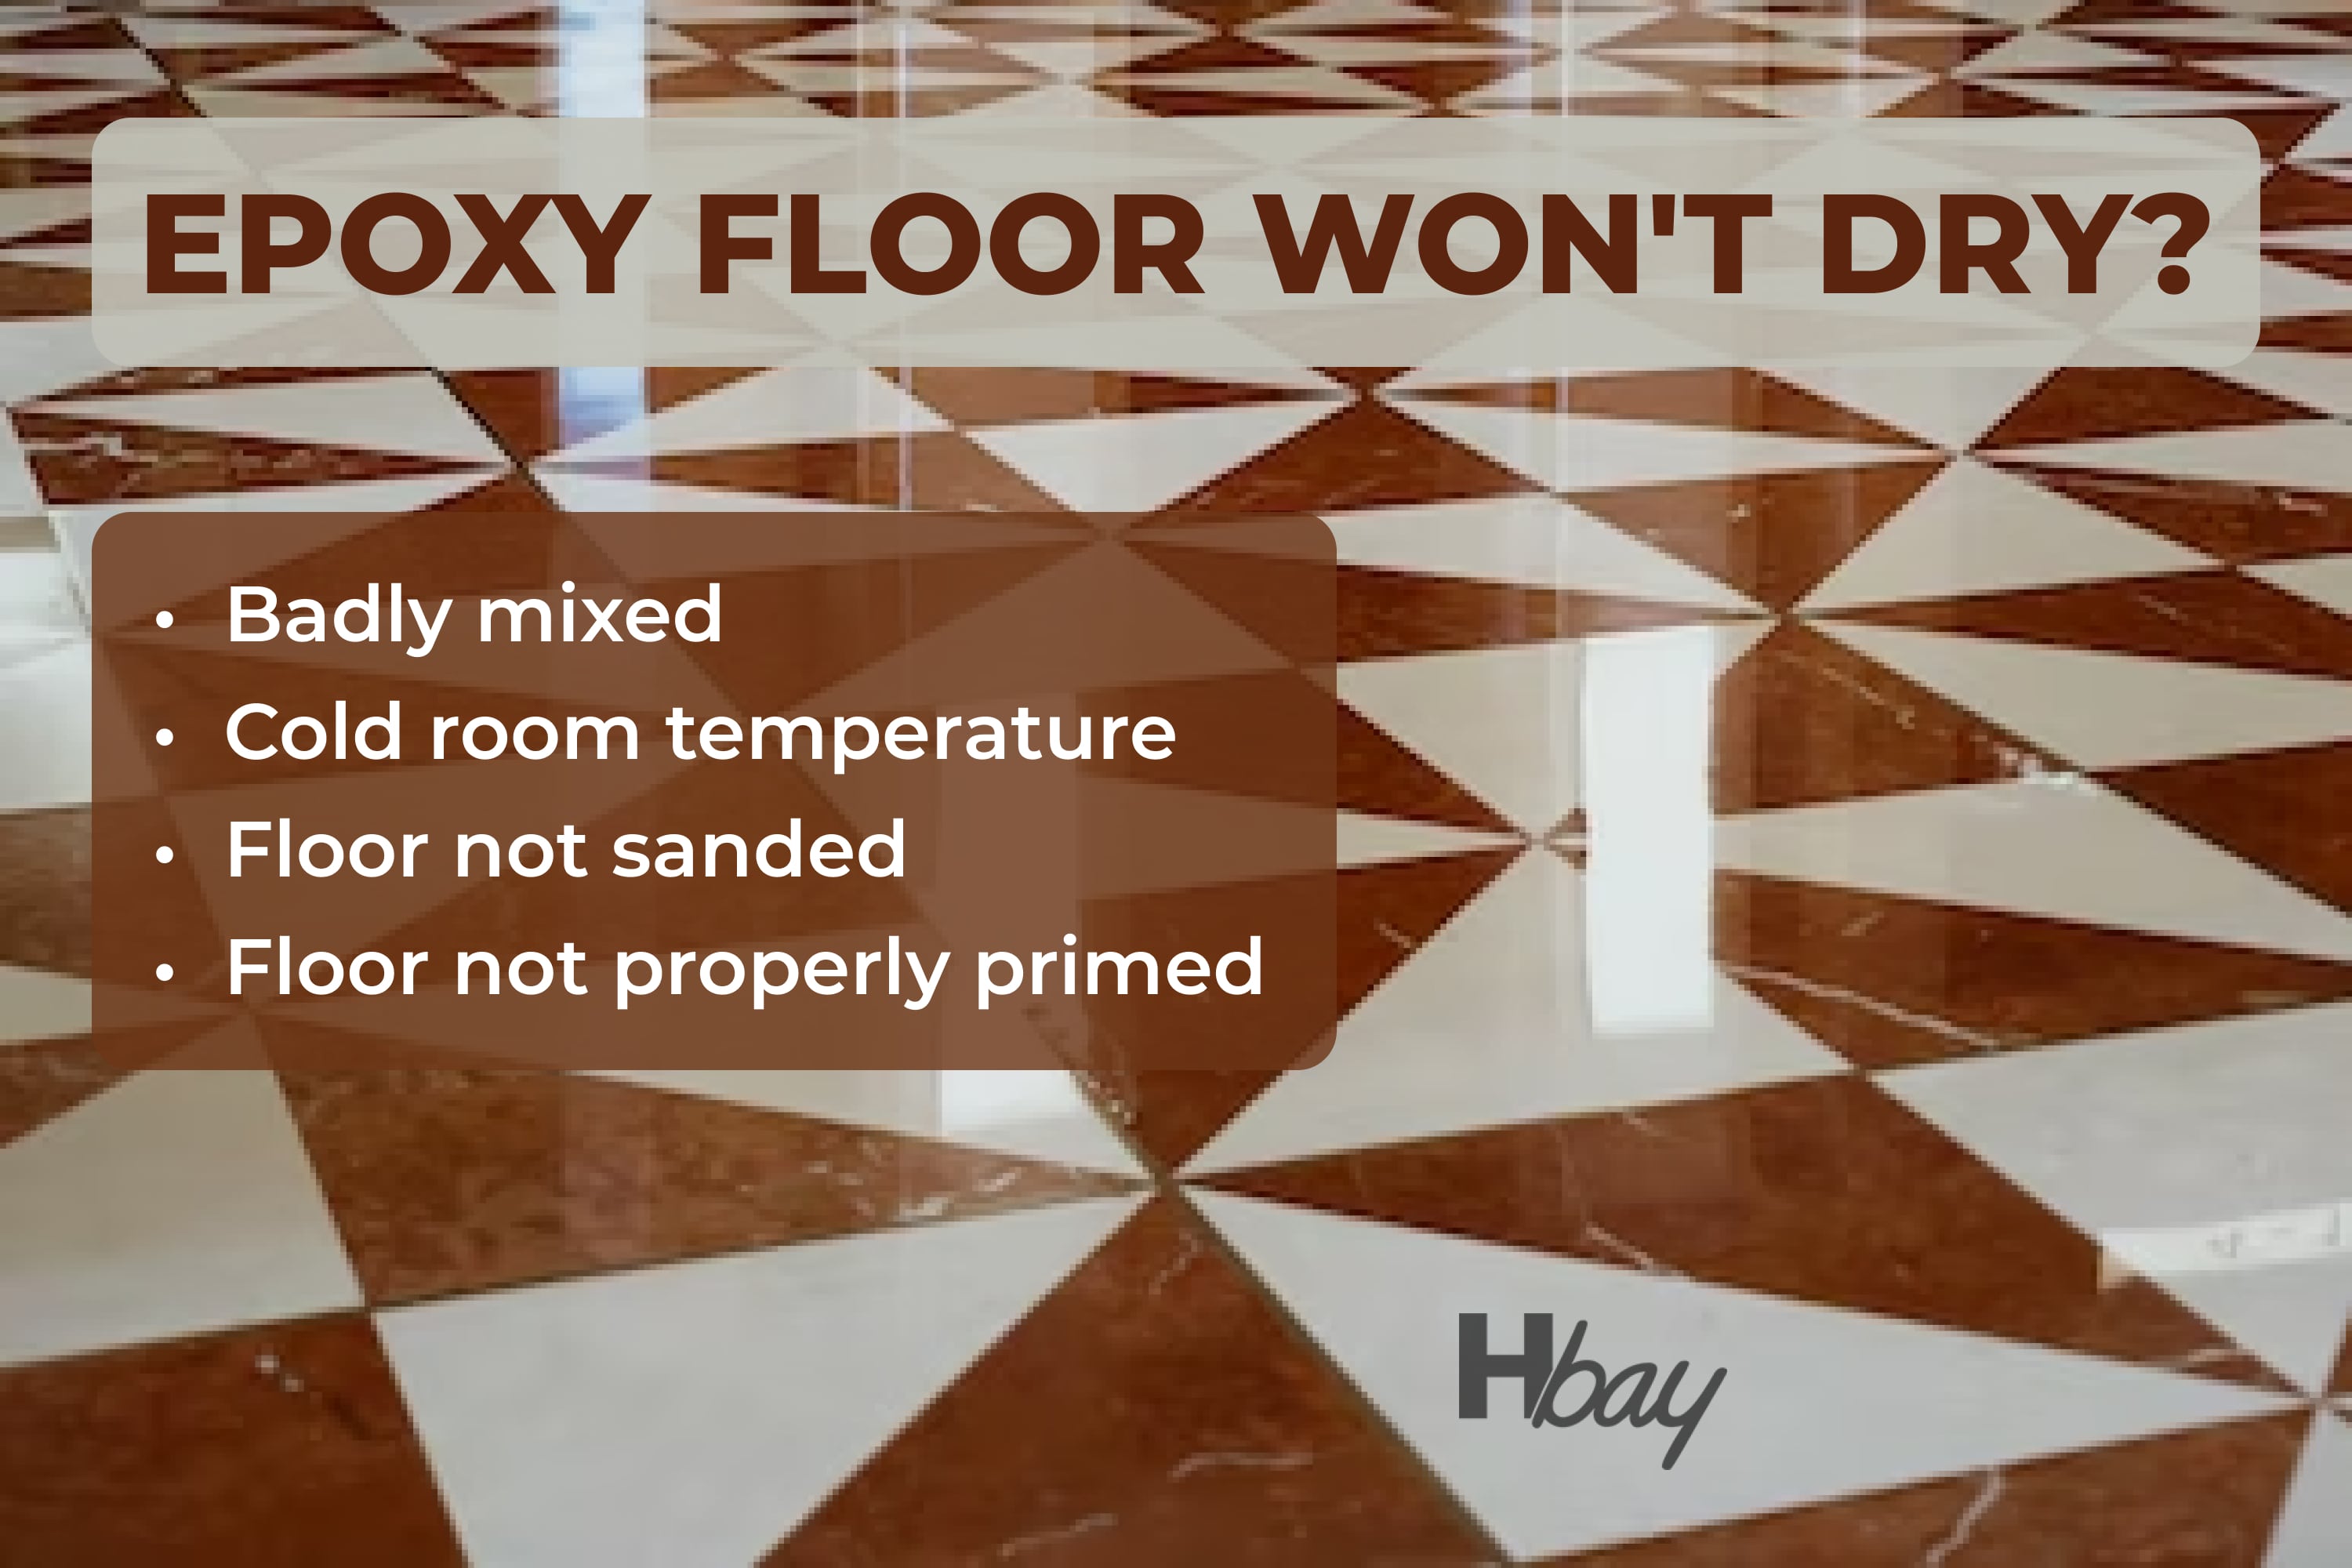 Epoxy floor won’t dry